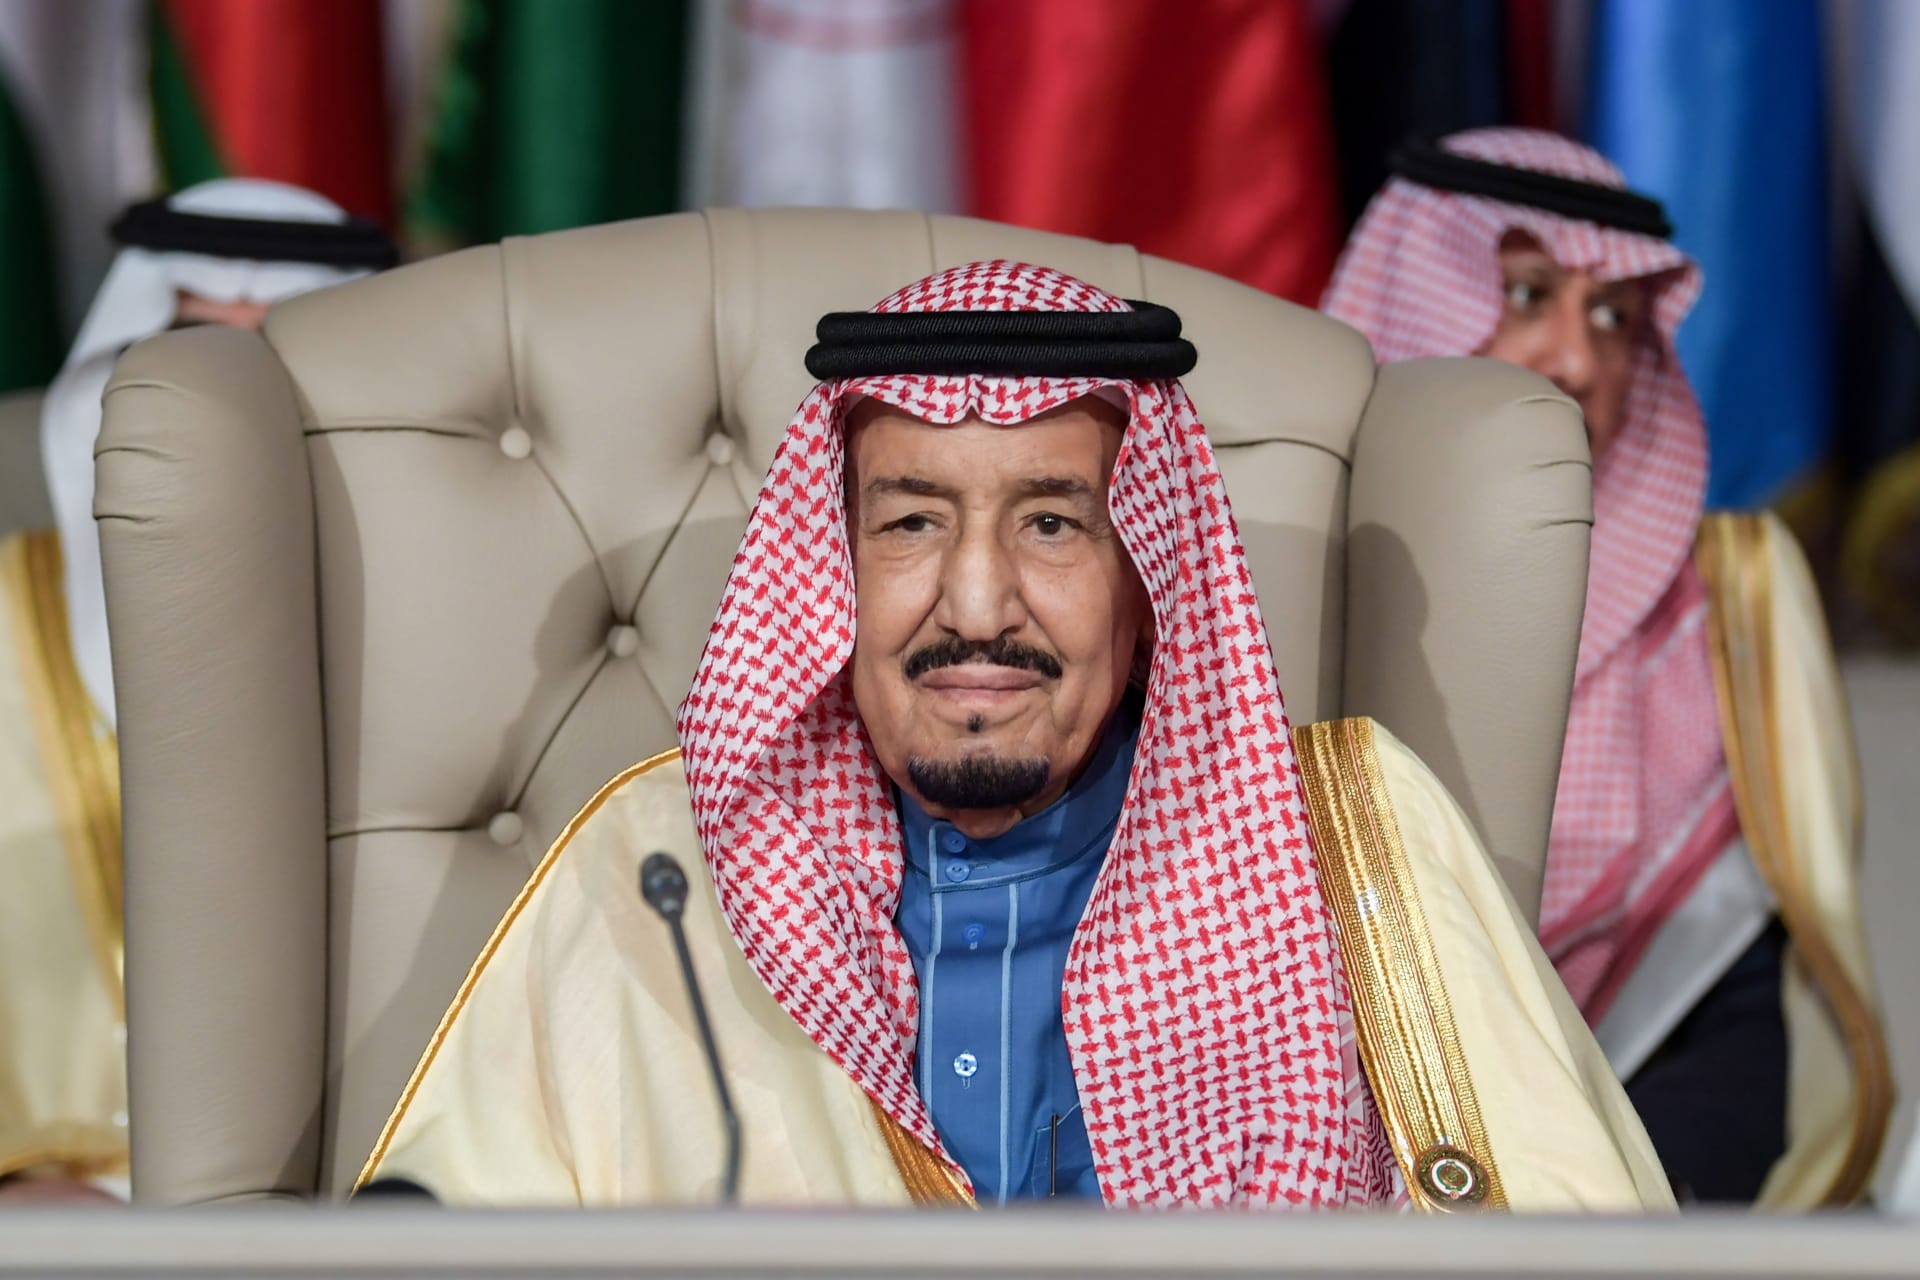 ملك السعودية يتلقى وسام "النسر الذهبي" من رئيس كازاخستان